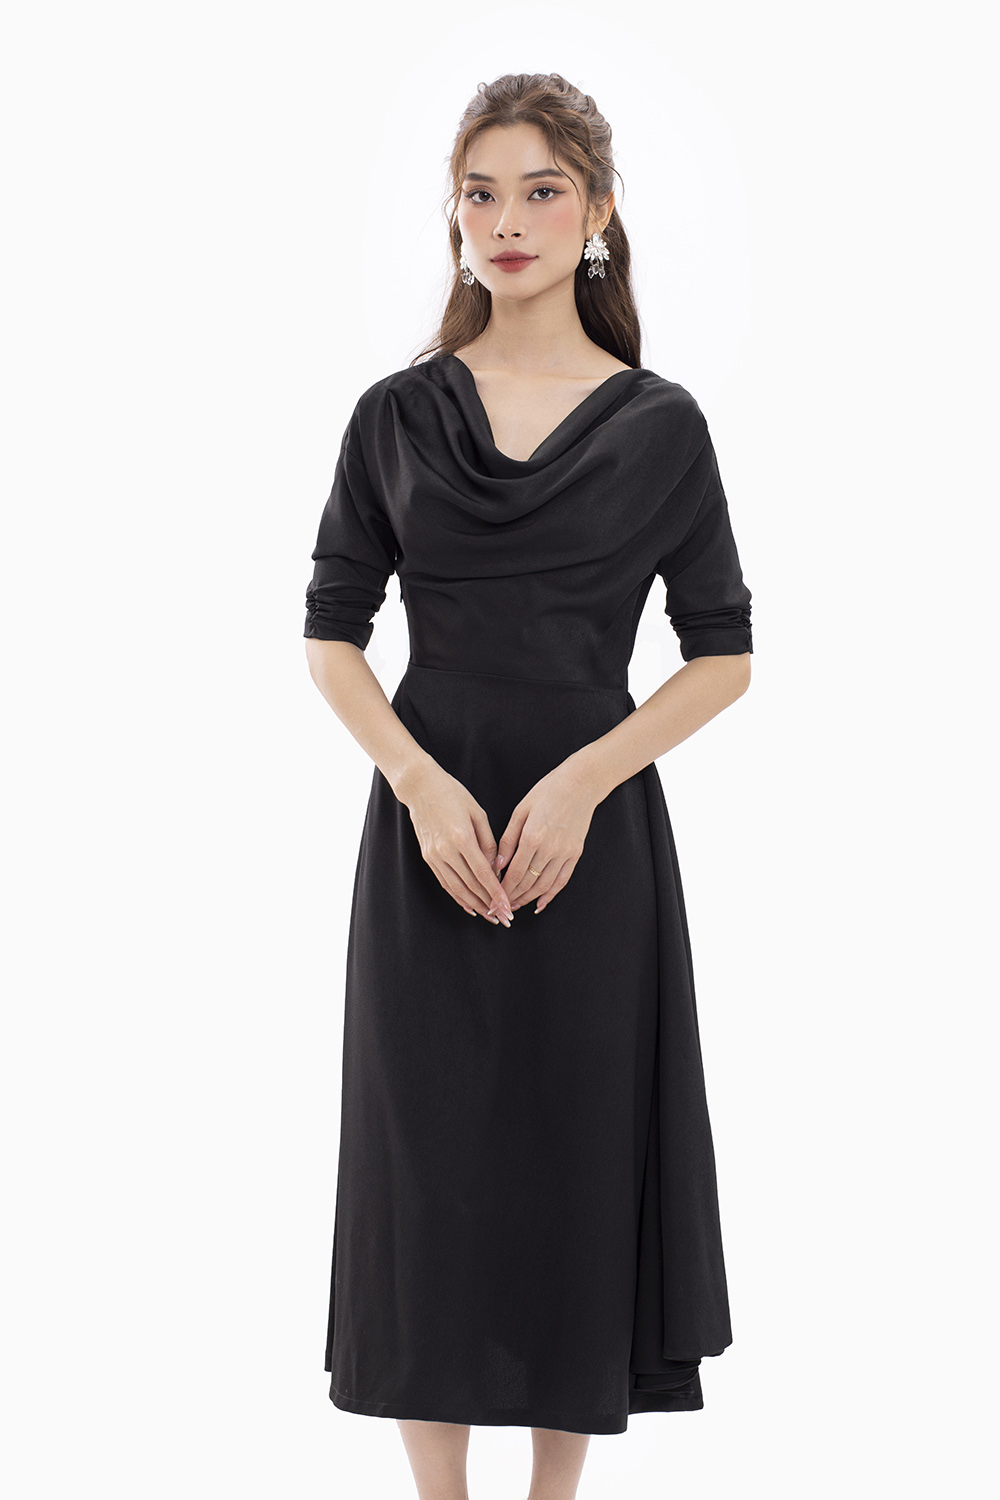 Váy 2 dây dáng dài, chất lụa basic, đầm ngủ suông có thể mặc đi biển, có 3  màu trắng, đen, be VD027 ྇ | Shopee Việt Nam